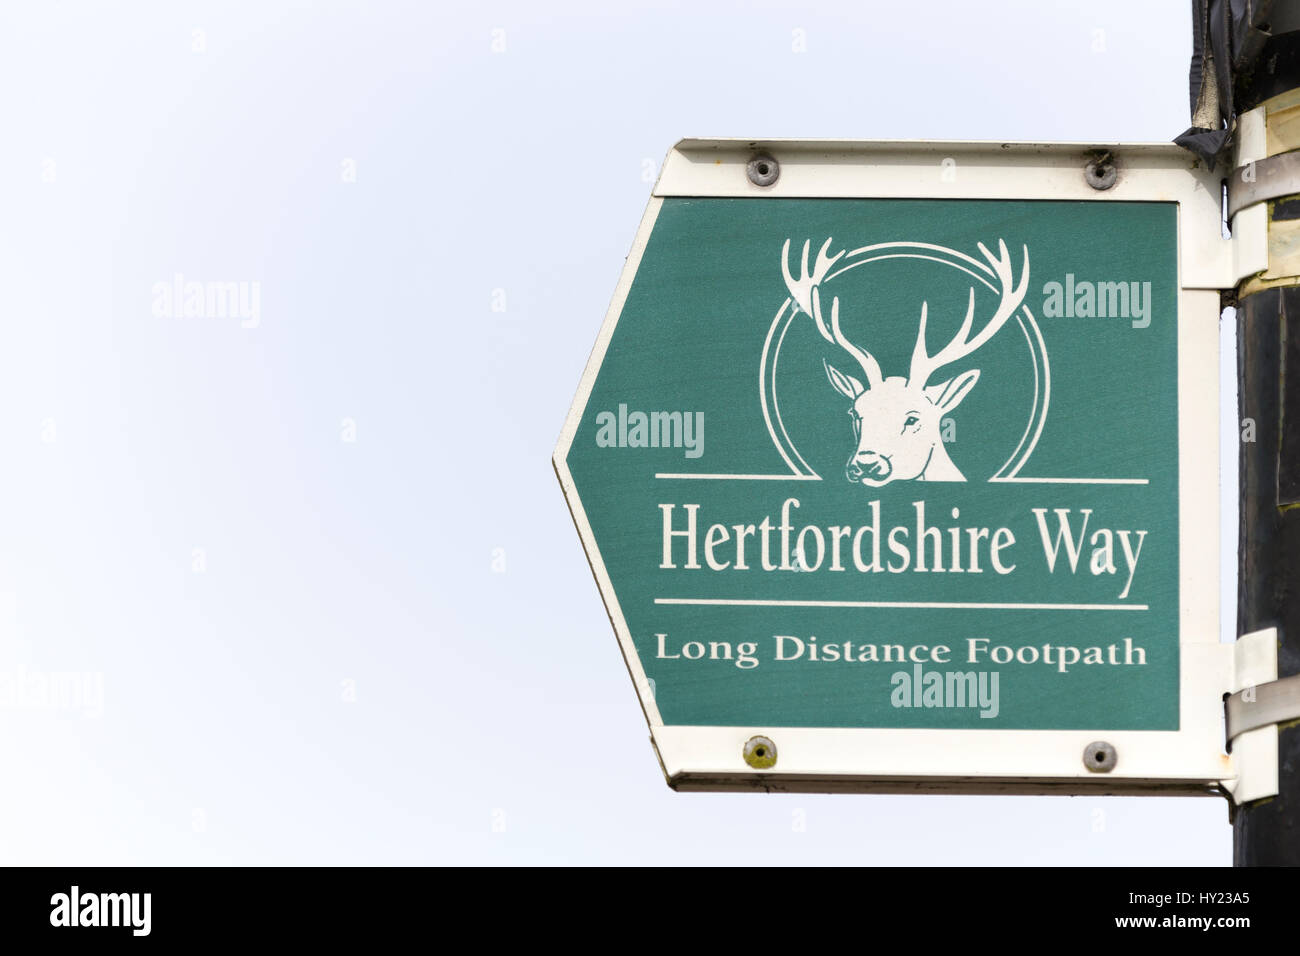 Hertfordshire Way signage. Stock Photo